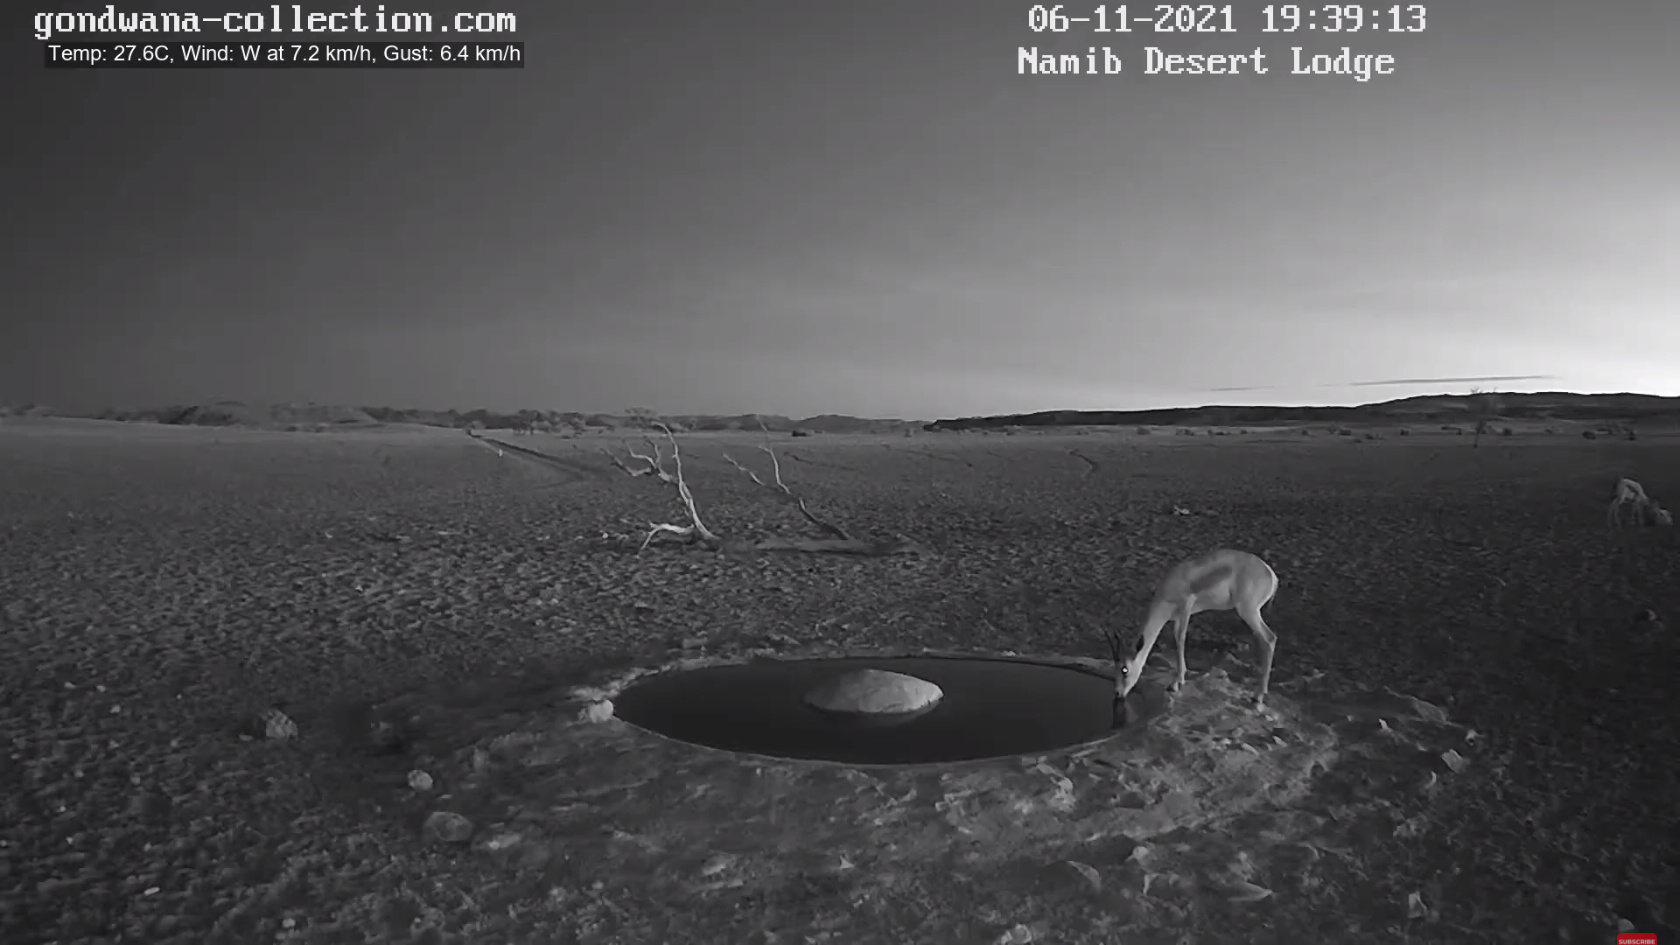 【動画】ナミブ砂漠に設置された人工水飲み場を見守るライブカメラ配信が癒されるとひそかに話題に\n_2